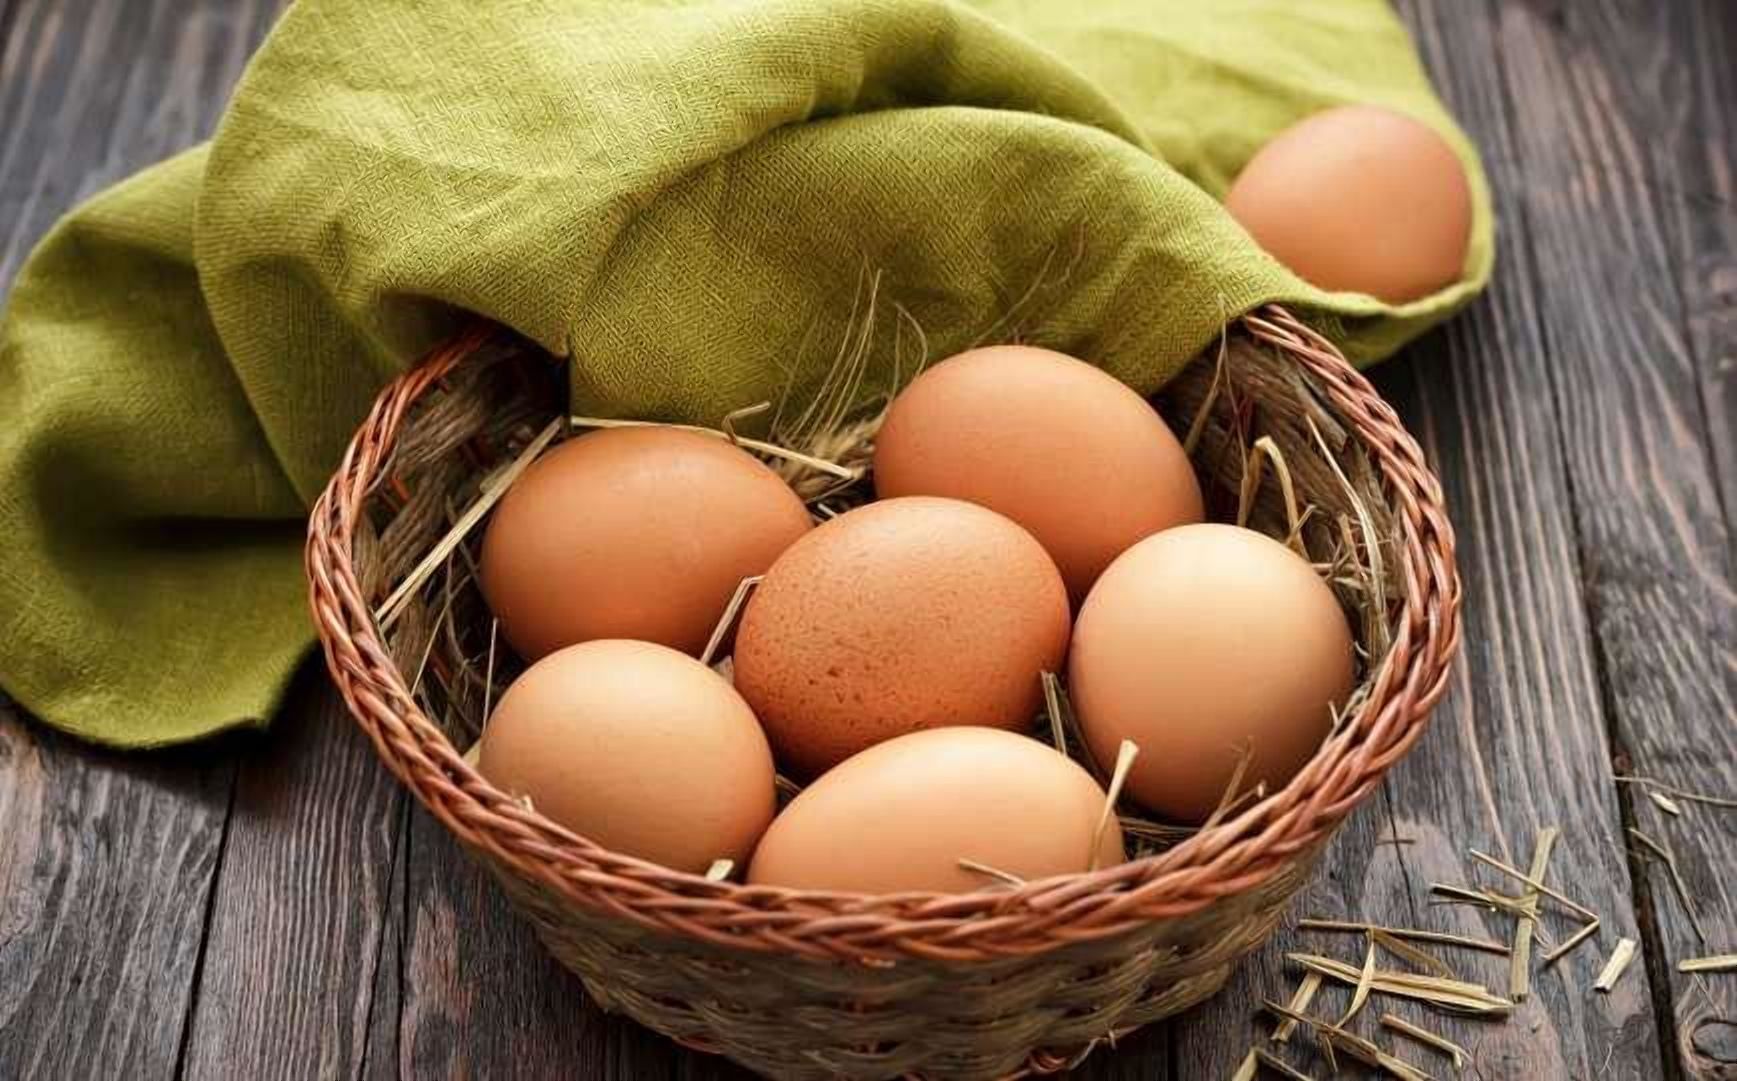 40 гривен за десяток: яйца скоро будут шокировать ценой - Агро